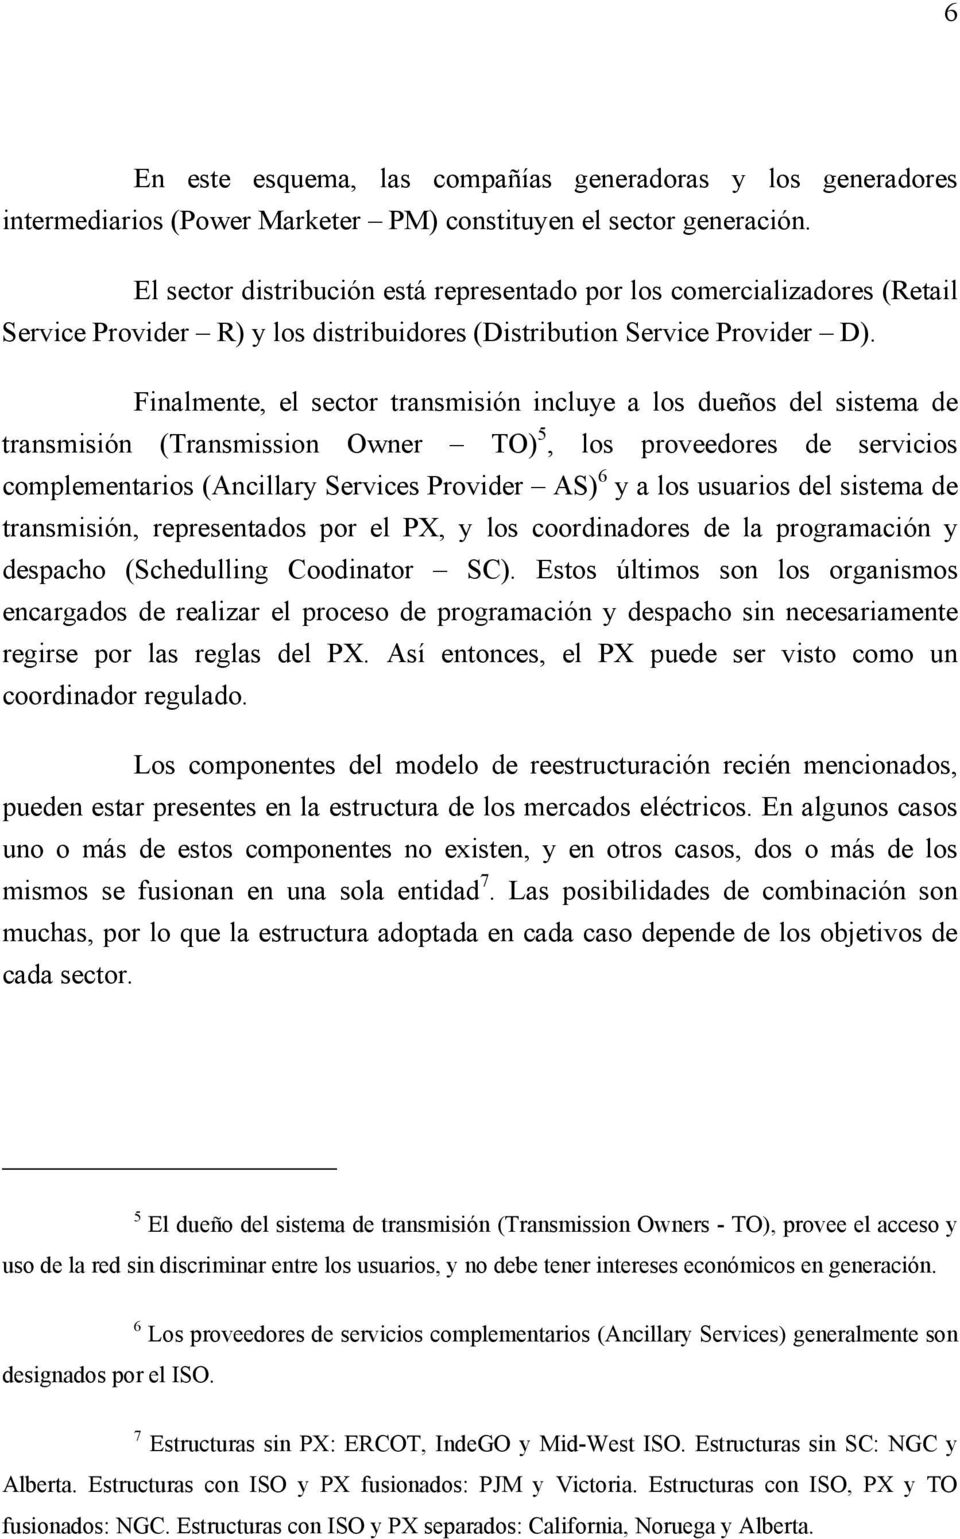 Fnalmente, el sector transmsón ncluye a los dueños del sstema de transmsón (Transmsson Owner TO) 5, los proveedores de servcos complementaros (Ancllary Servces Provder AS) 6 y a los usuaros del